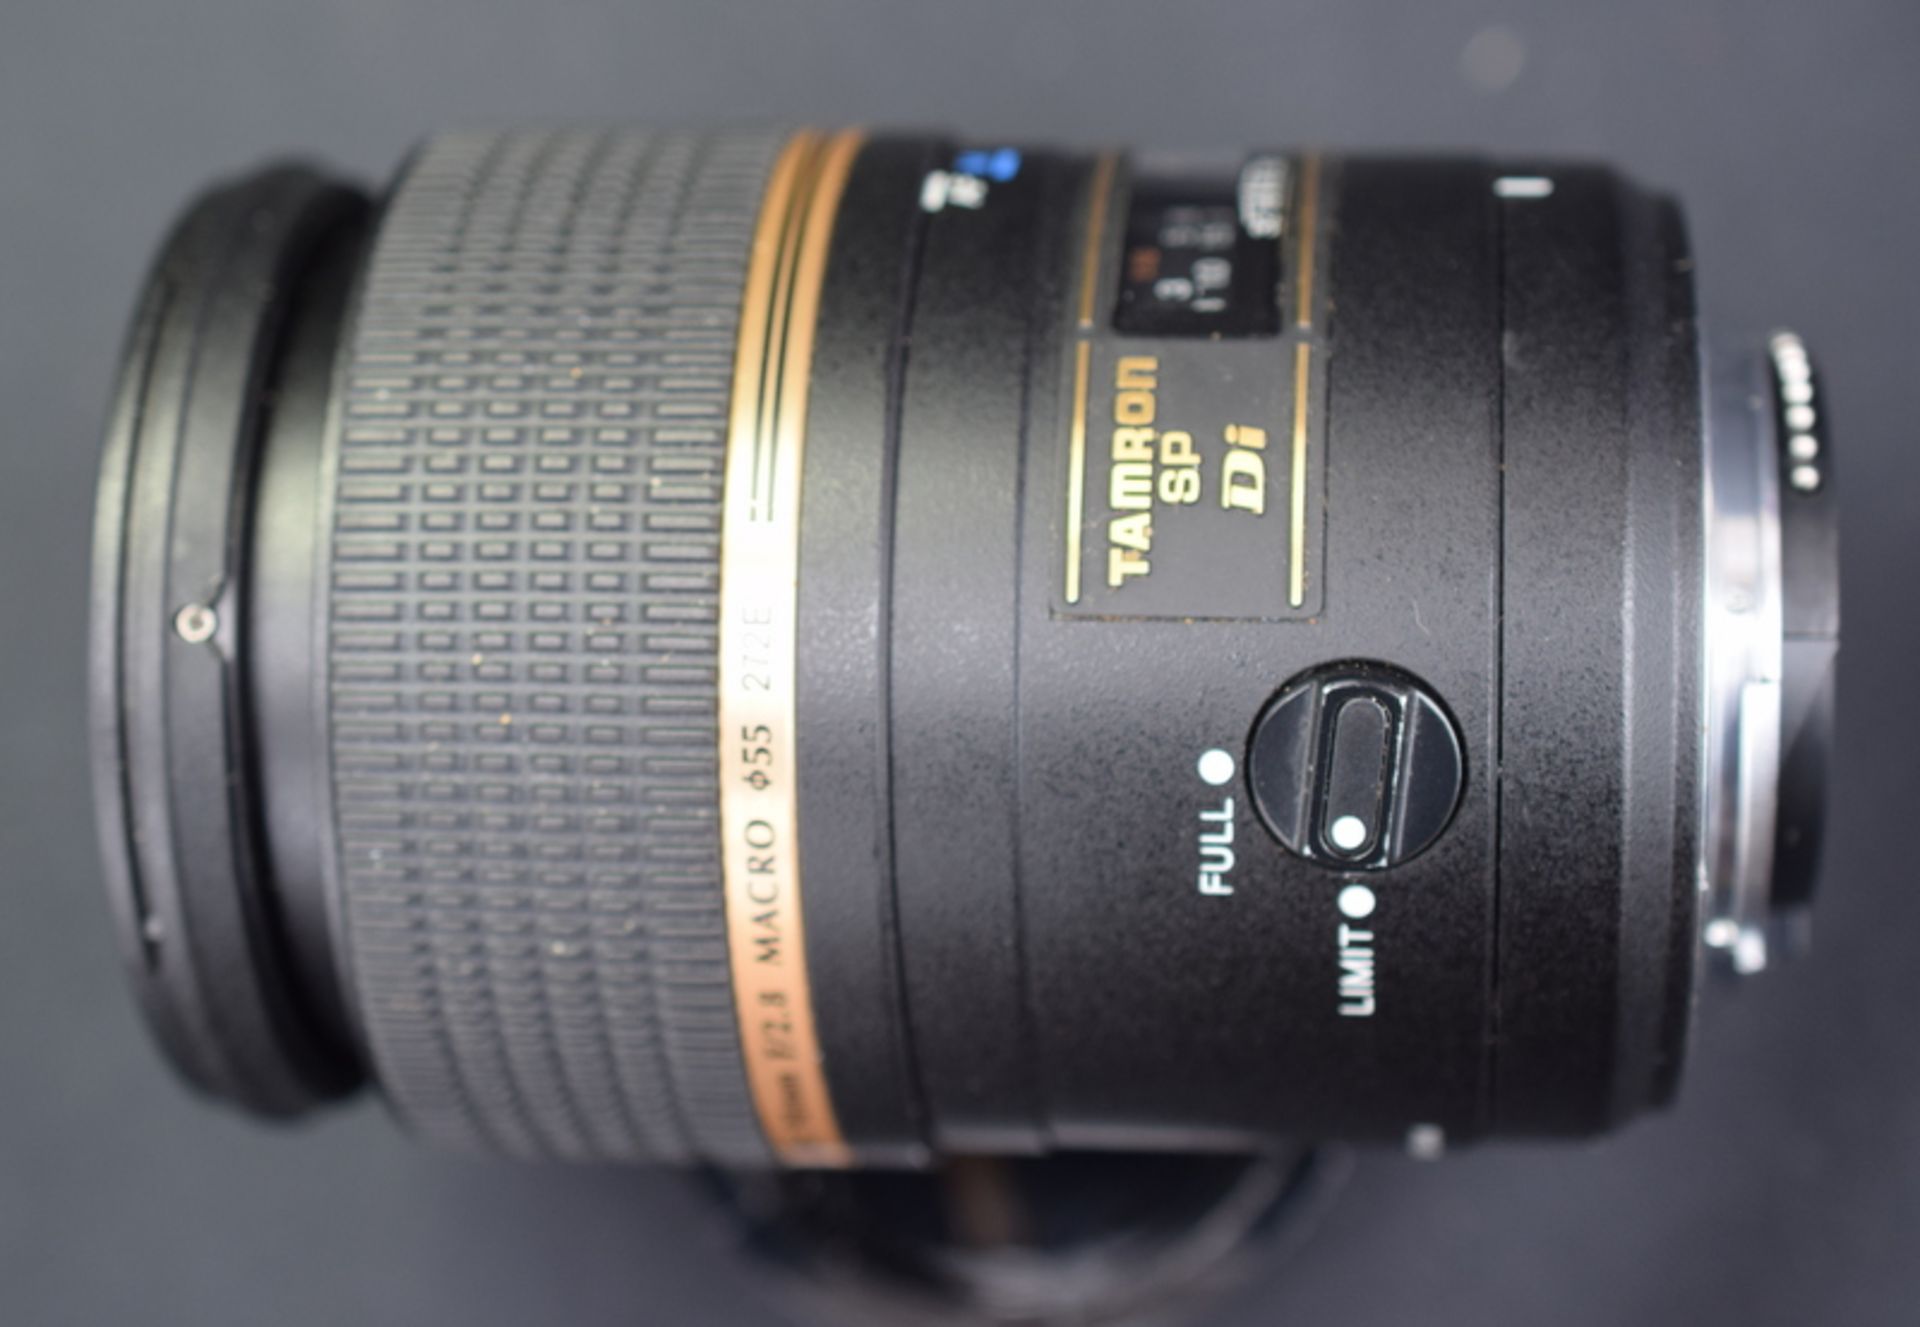 Tamron SP AF 90mm F/2.8 Di Macro 1:1 Lens - Nikon Fit - Image 2 of 5